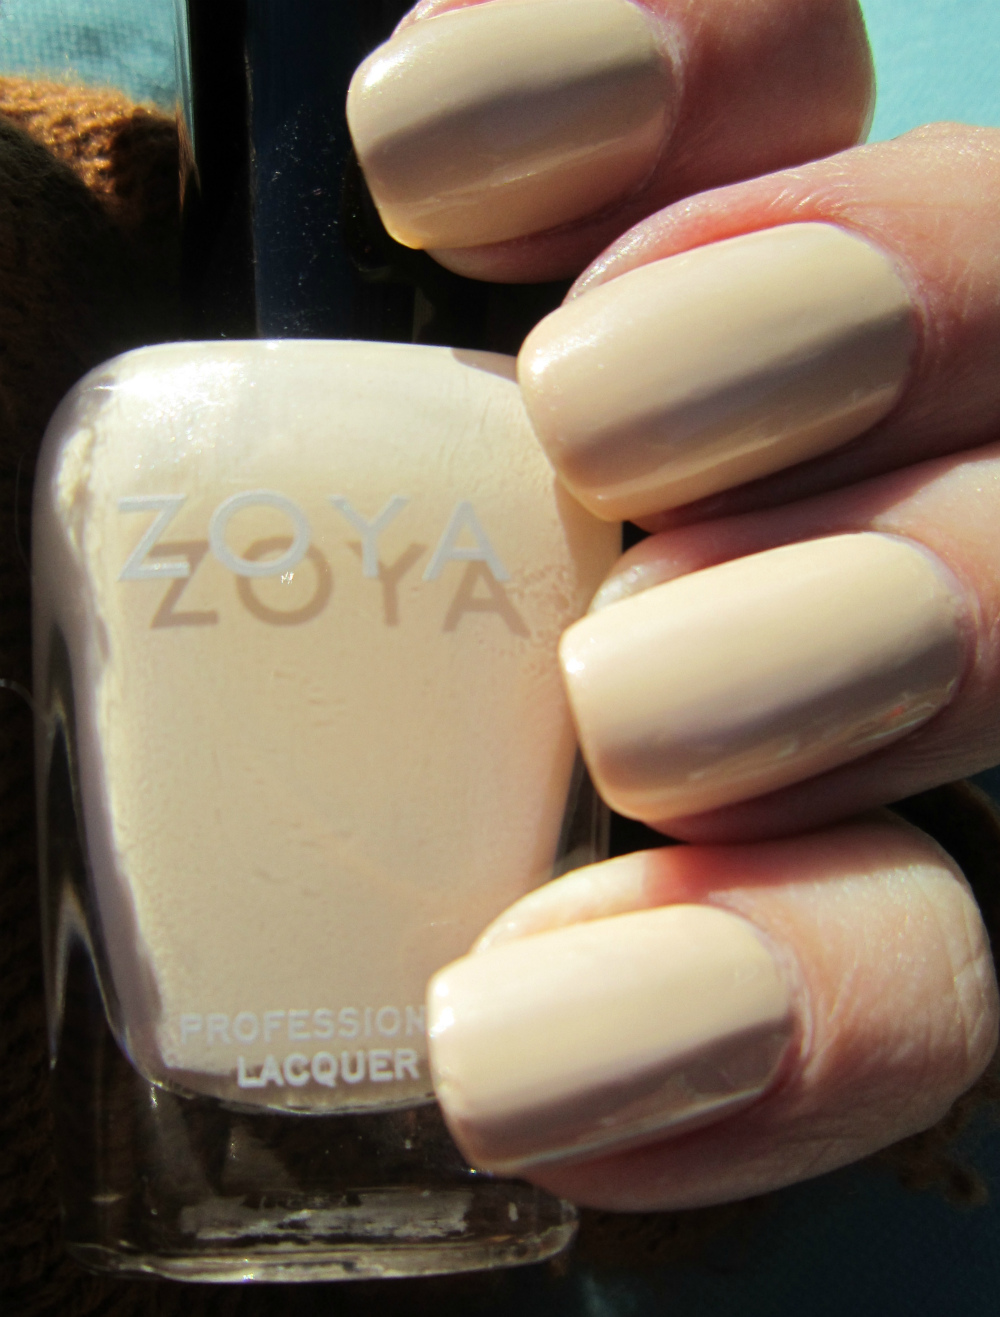 Zoya Swatches Part 2 | Zoya swatches, Beauty nails, Zoya